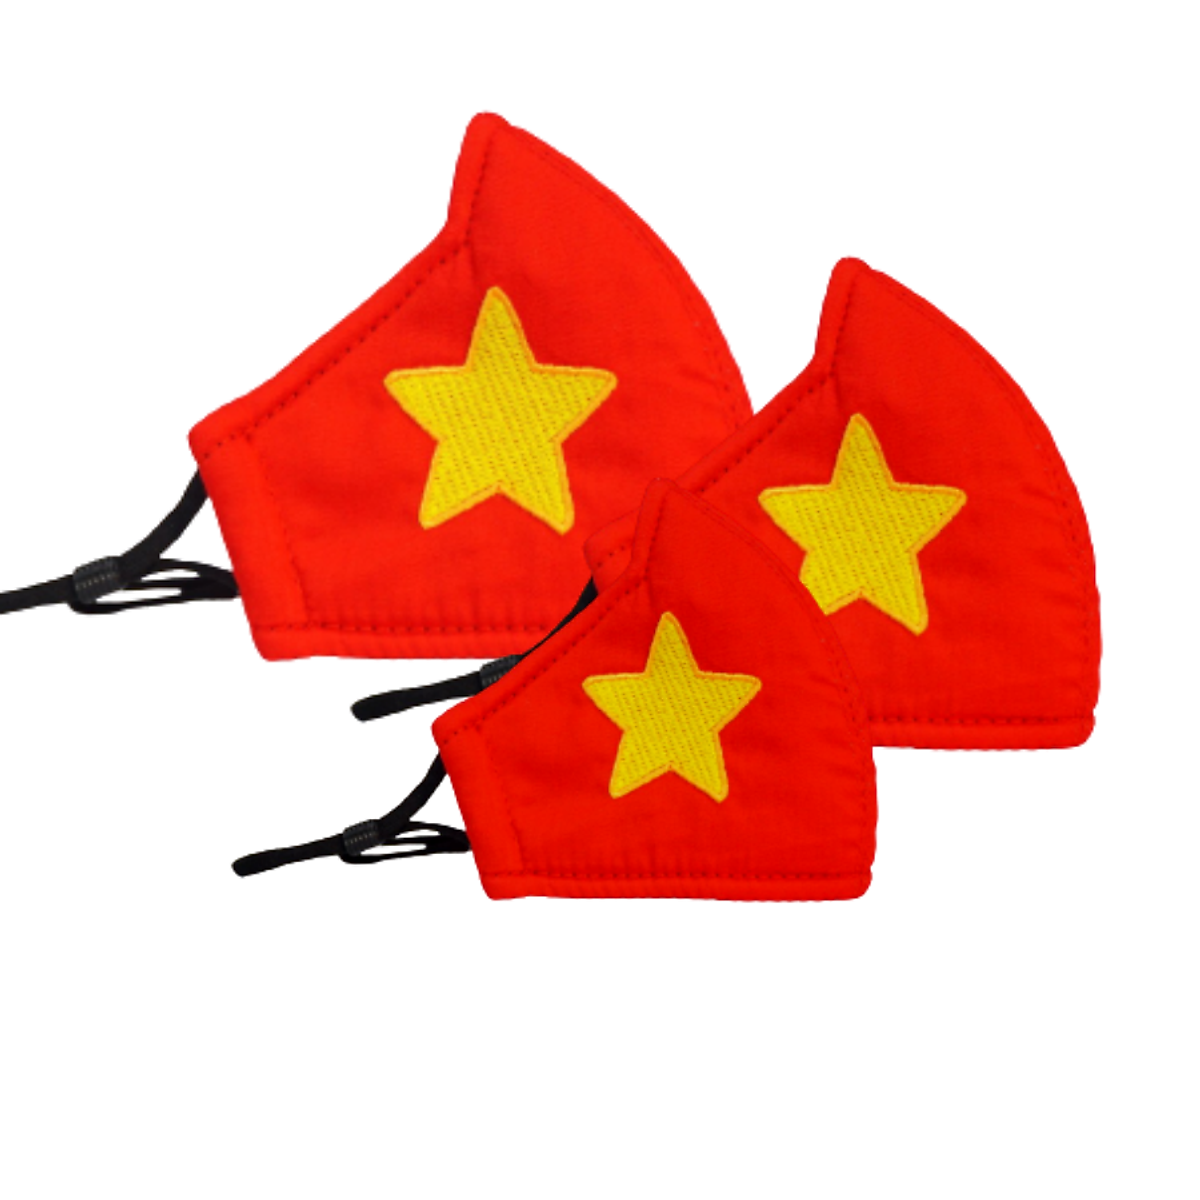 Khẩu trang Kissy cờ đỏ sao vàng L: Áo khẩu trang cờ Việt Nam đang trở thành hot trend với những công ty vừa thanh lịch lại thể hiện sự tôn trọng đến quốc kỳ. Hãy cùng ngắm nhìn hình ảnh khẩu trang Kissy cờ đỏ sao vàng L - một sản phẩm đẳng cấp, tinh tế, phù hợp với những buổi tiệc, sự kiện, và cả ngày thường.